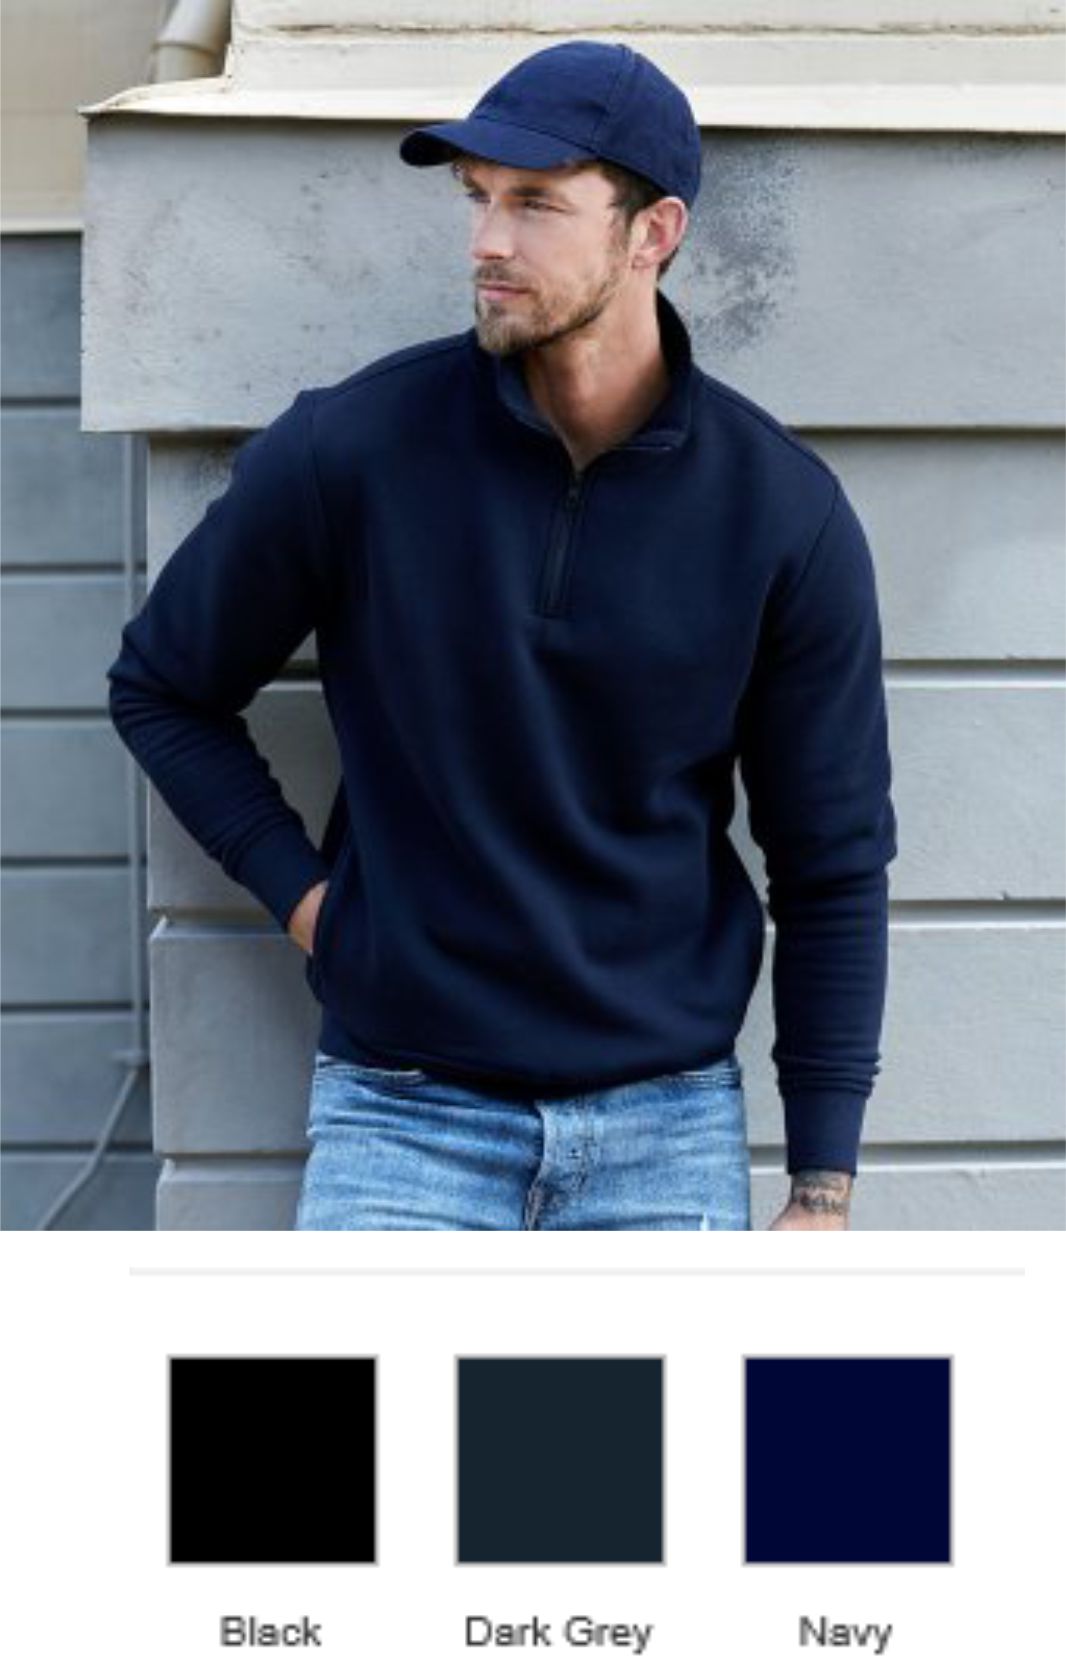 T5438 Tee Jays Half Zip Sweatshirt